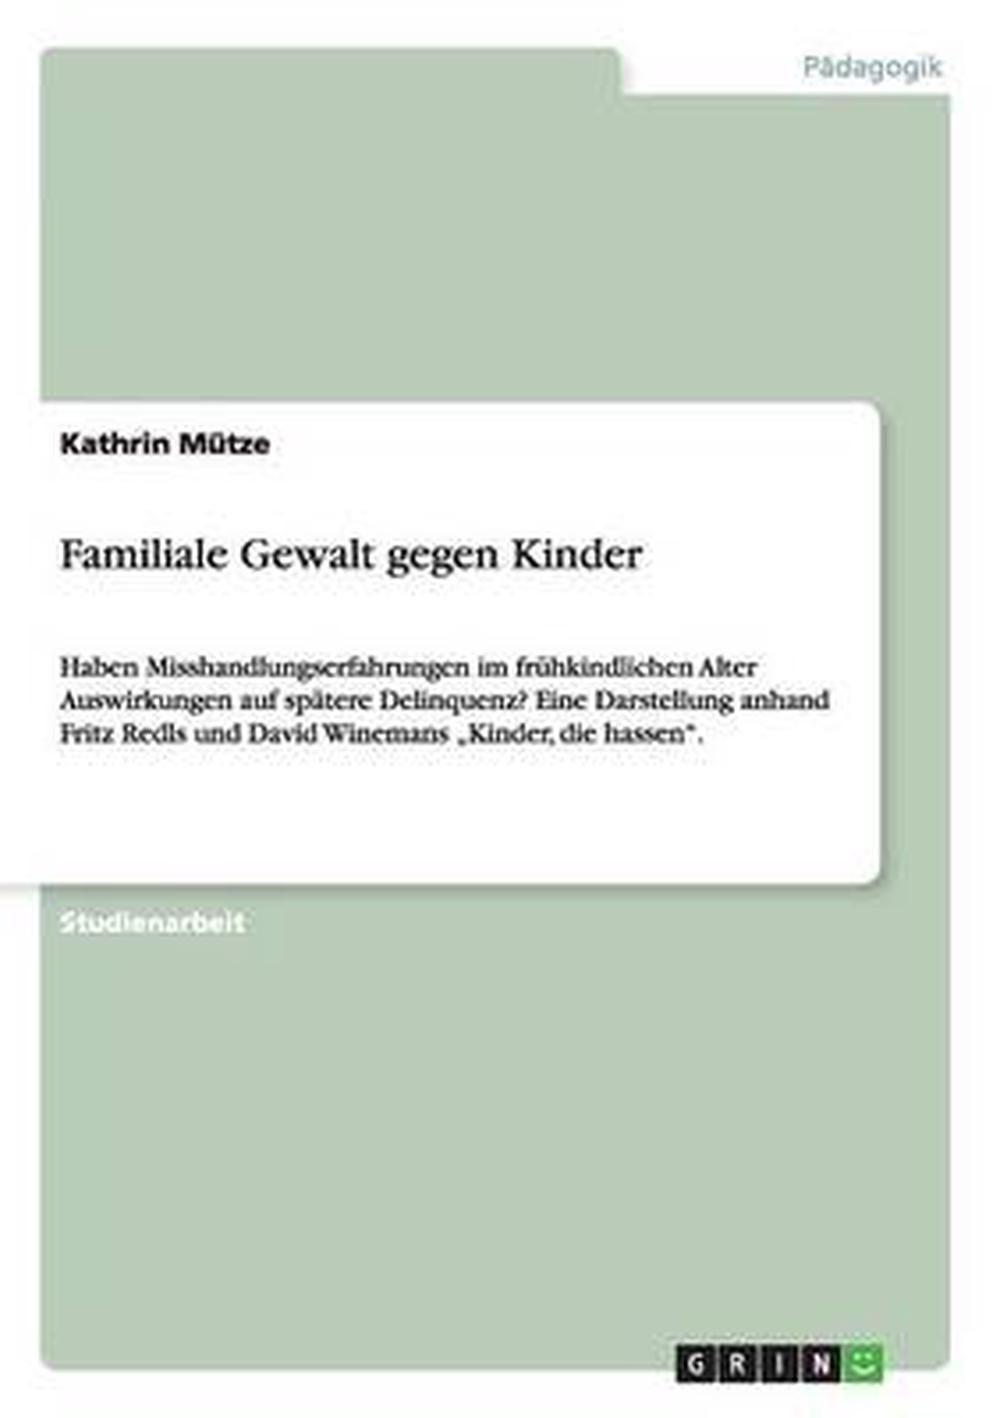 Familiale Gewalt Gegen Kinder by Kathrin Mutze (German) Paperback Book ...